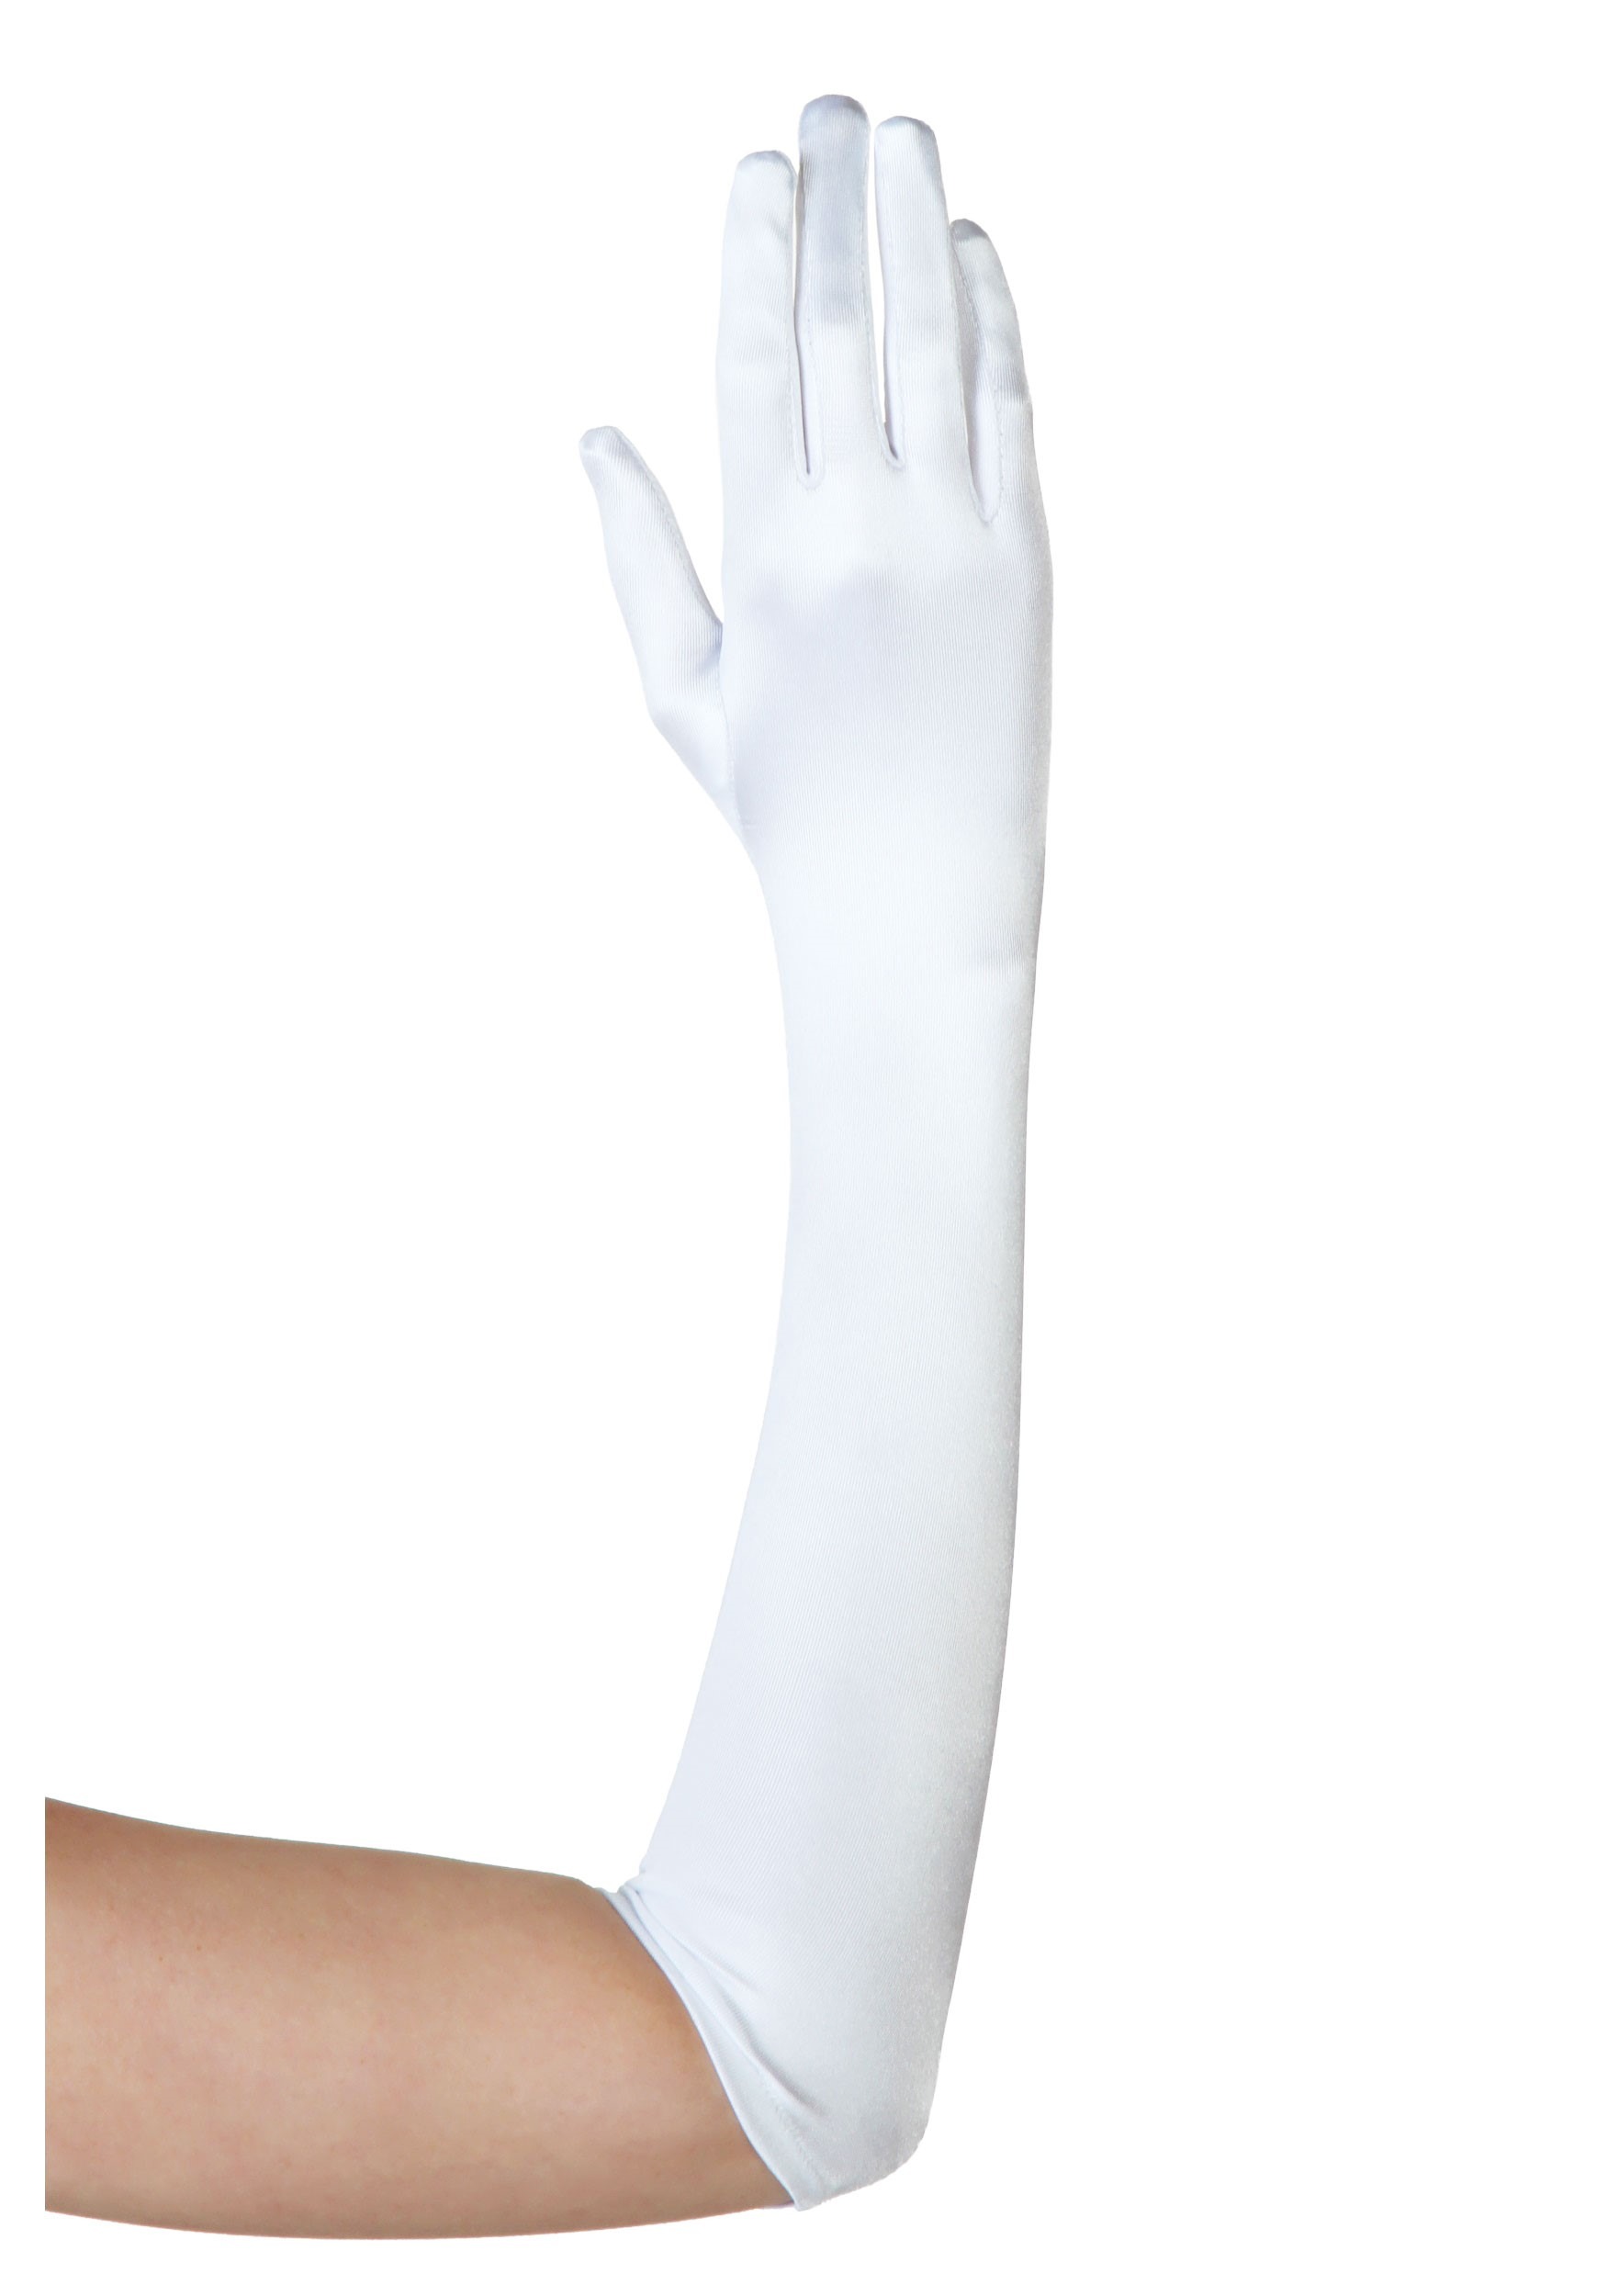 opera length gloves